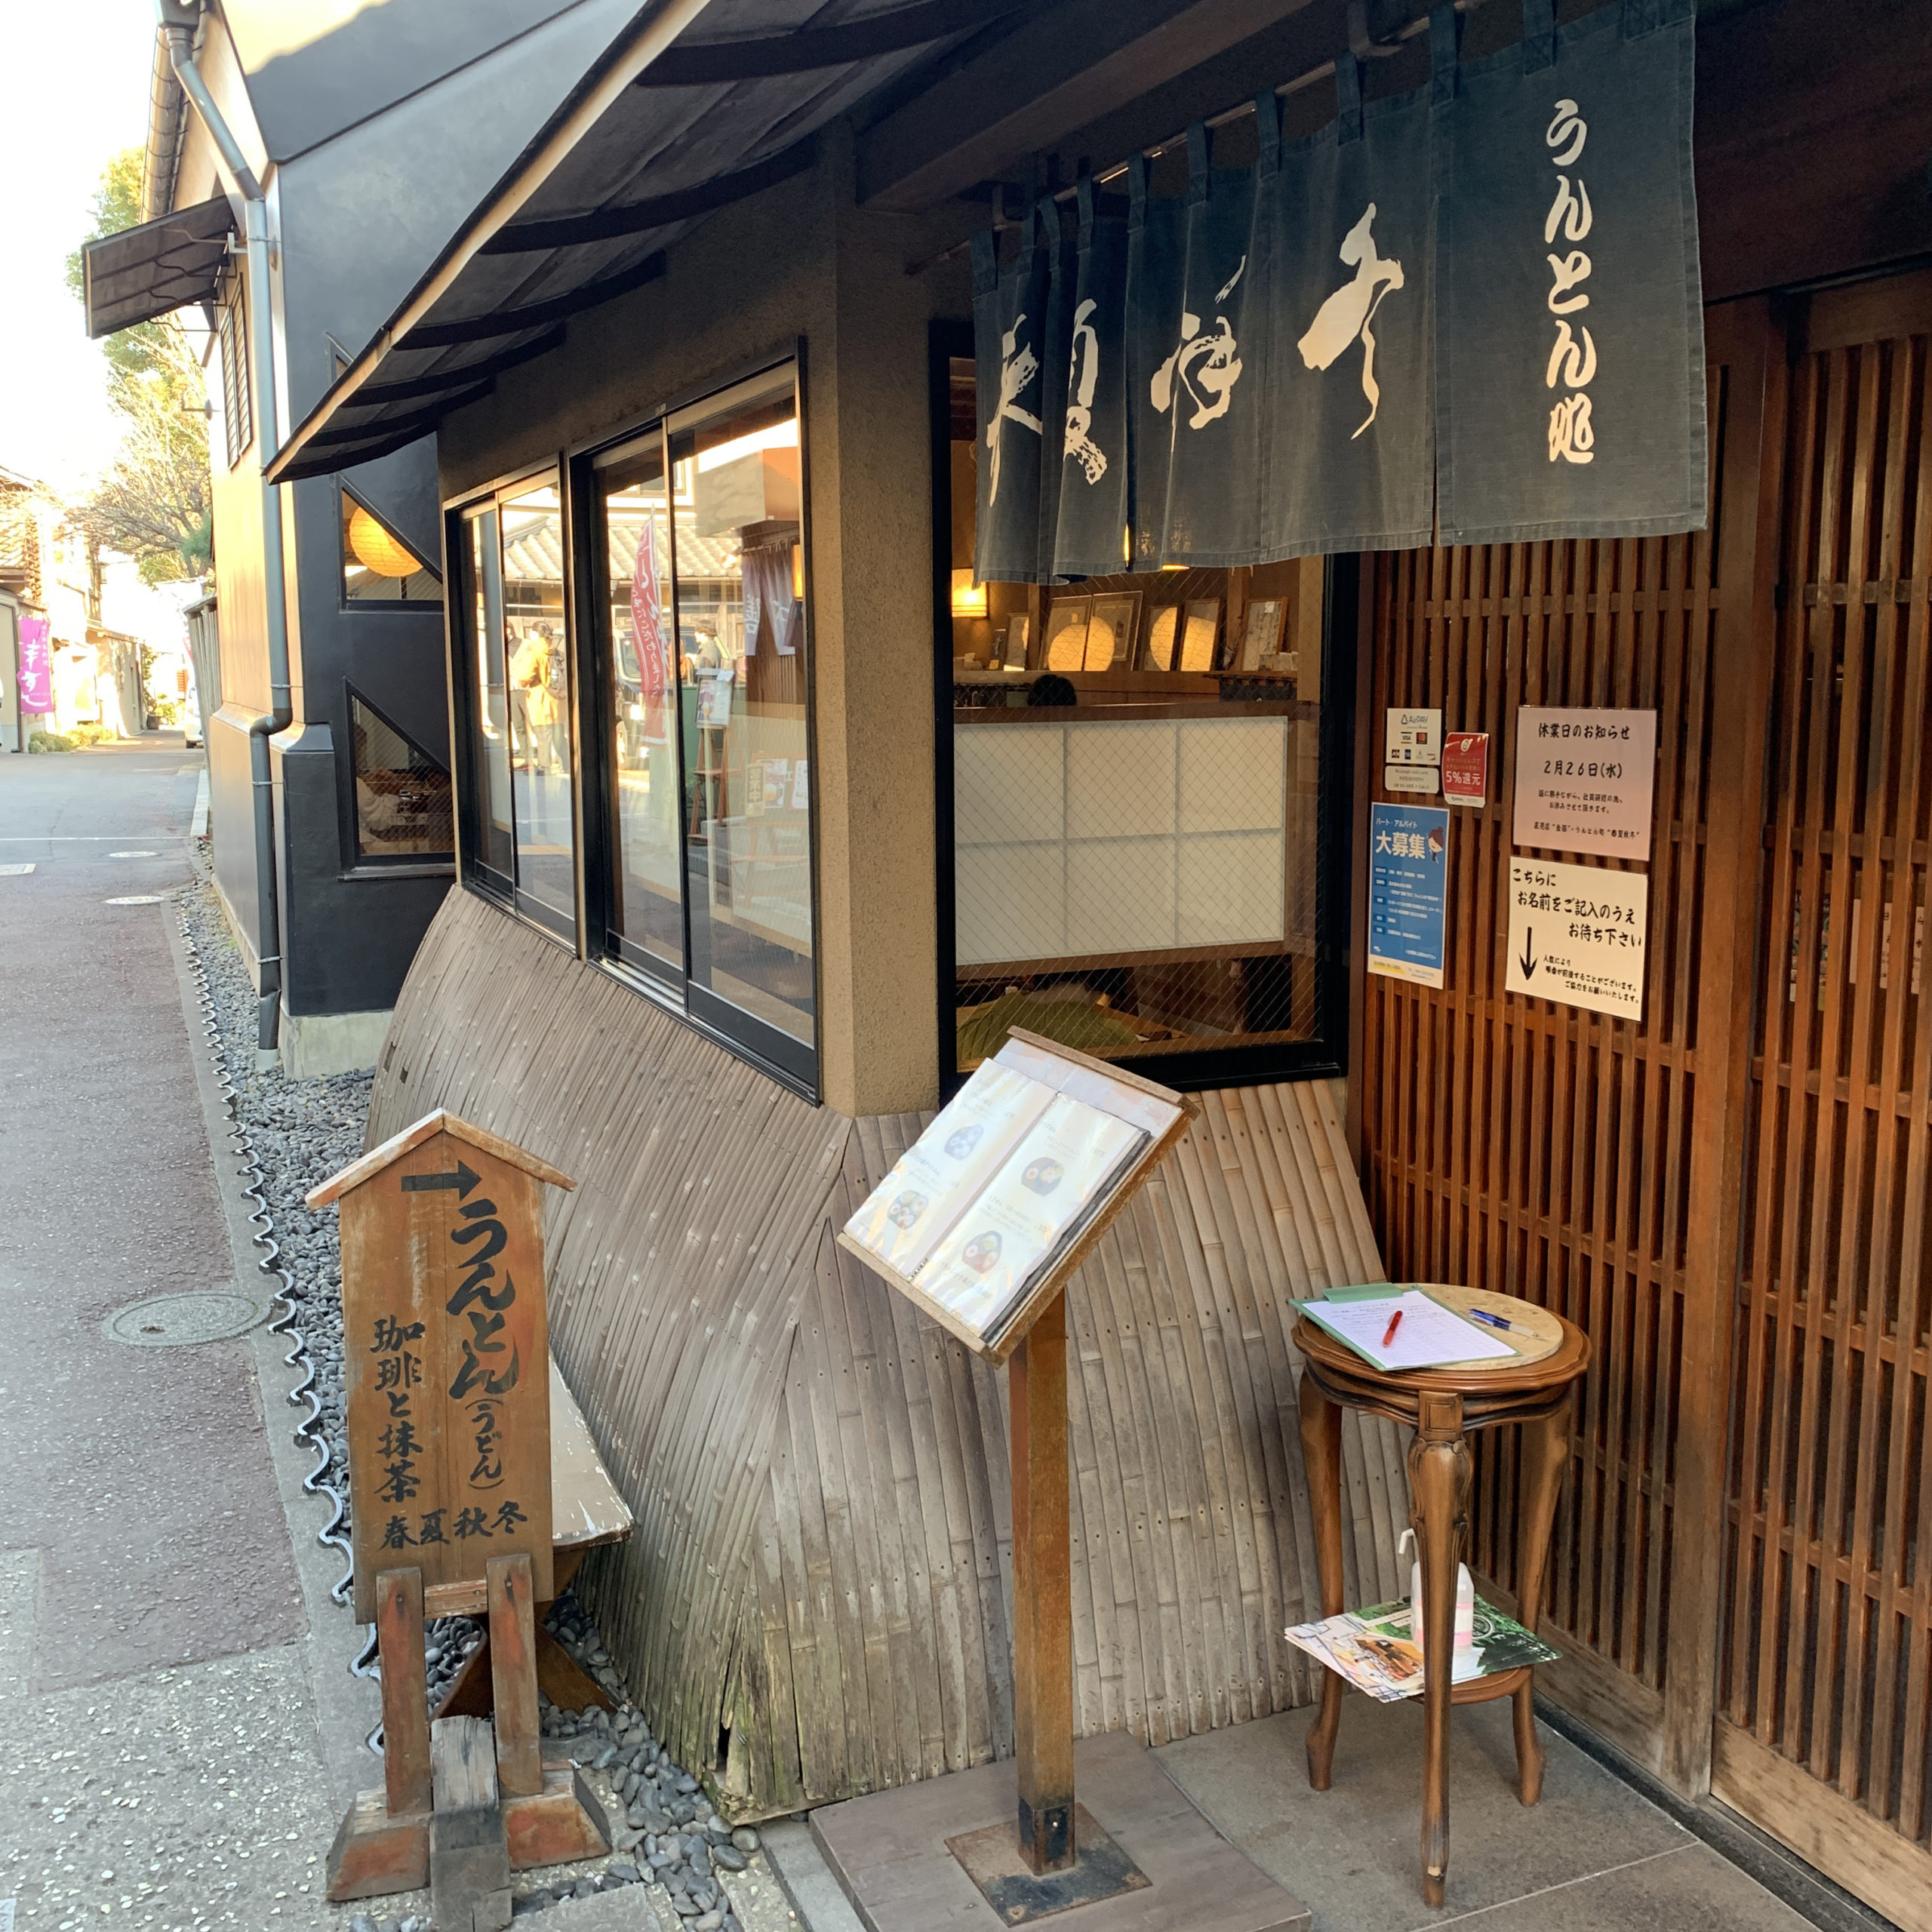 Unton place Shunka-shuto